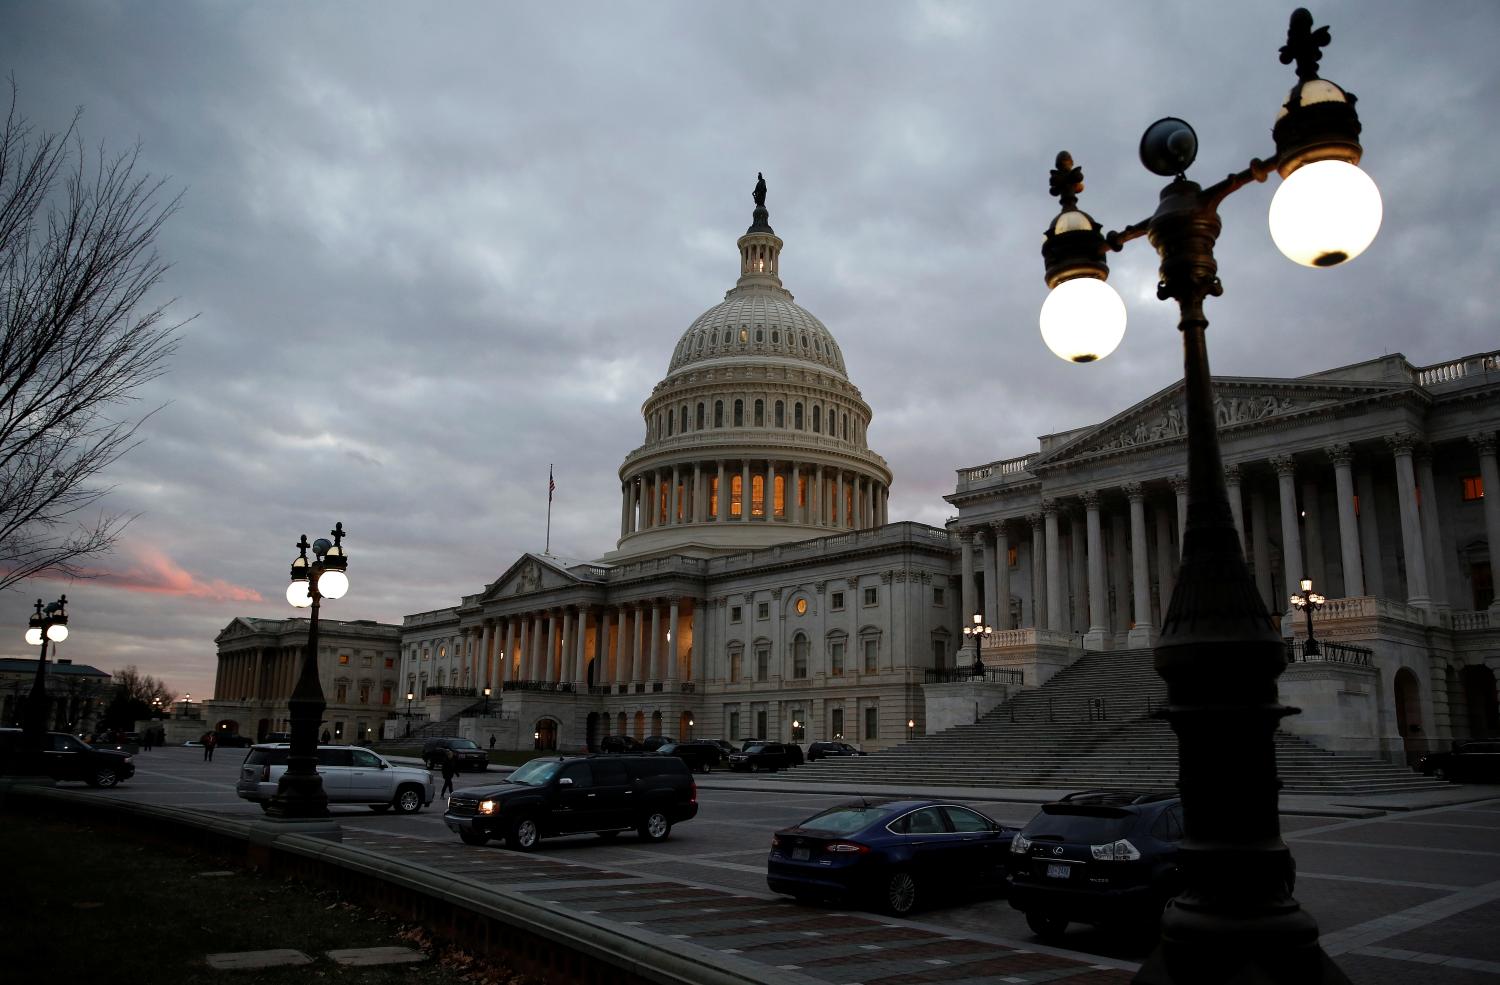 The U.S. Capitol building lit at dusk .